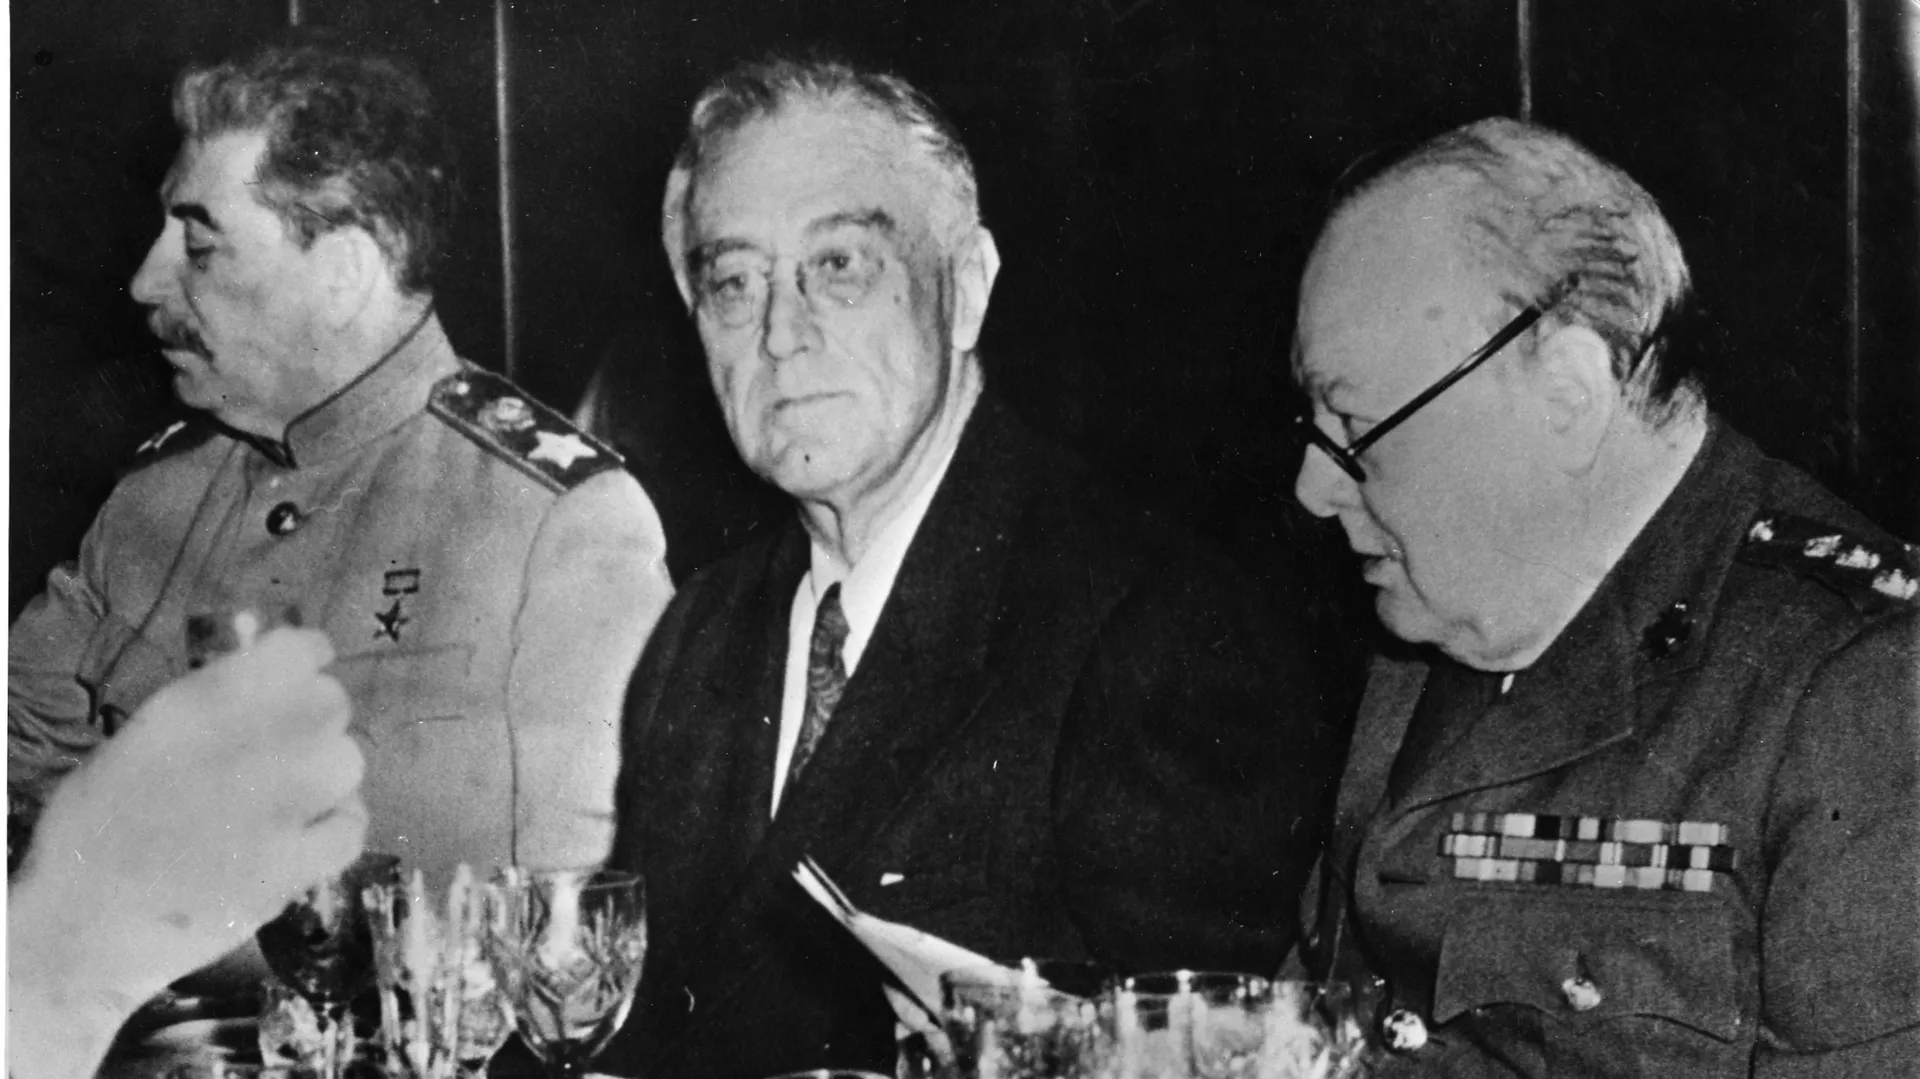 Иосиф Сталин, Франклин Рузвельт и Уинстон Черчилль во время финального ужина в Ялте. 11 февраля 1945  - РИА Новости, 1920, 17.12.2020